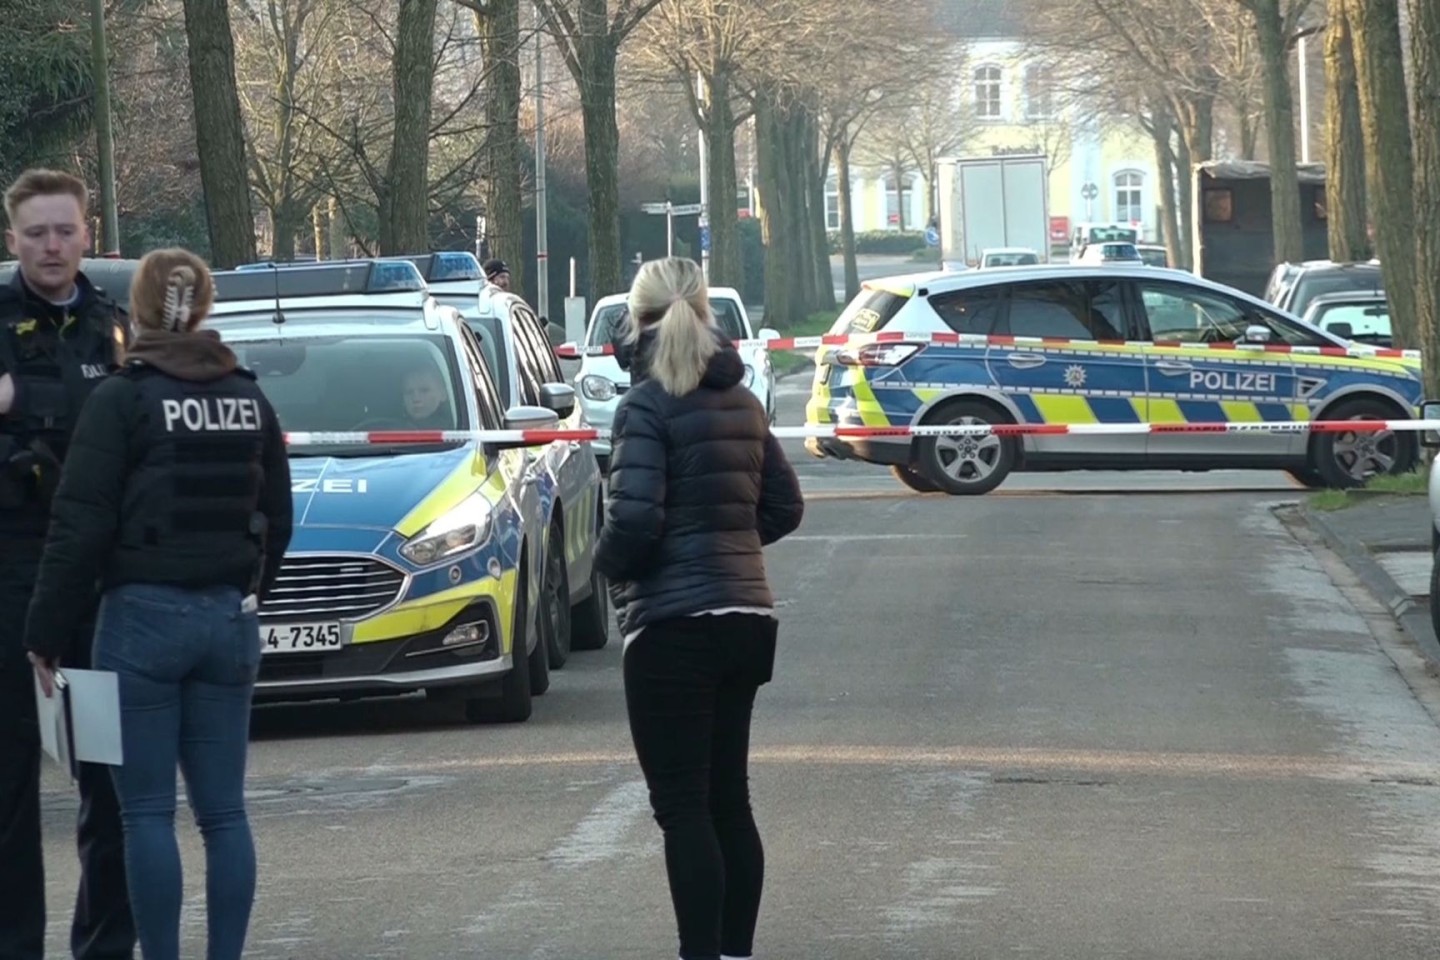 Einsatzkräfte der Polizei stehen in der Nähe des Tatorts in Ochtrup.